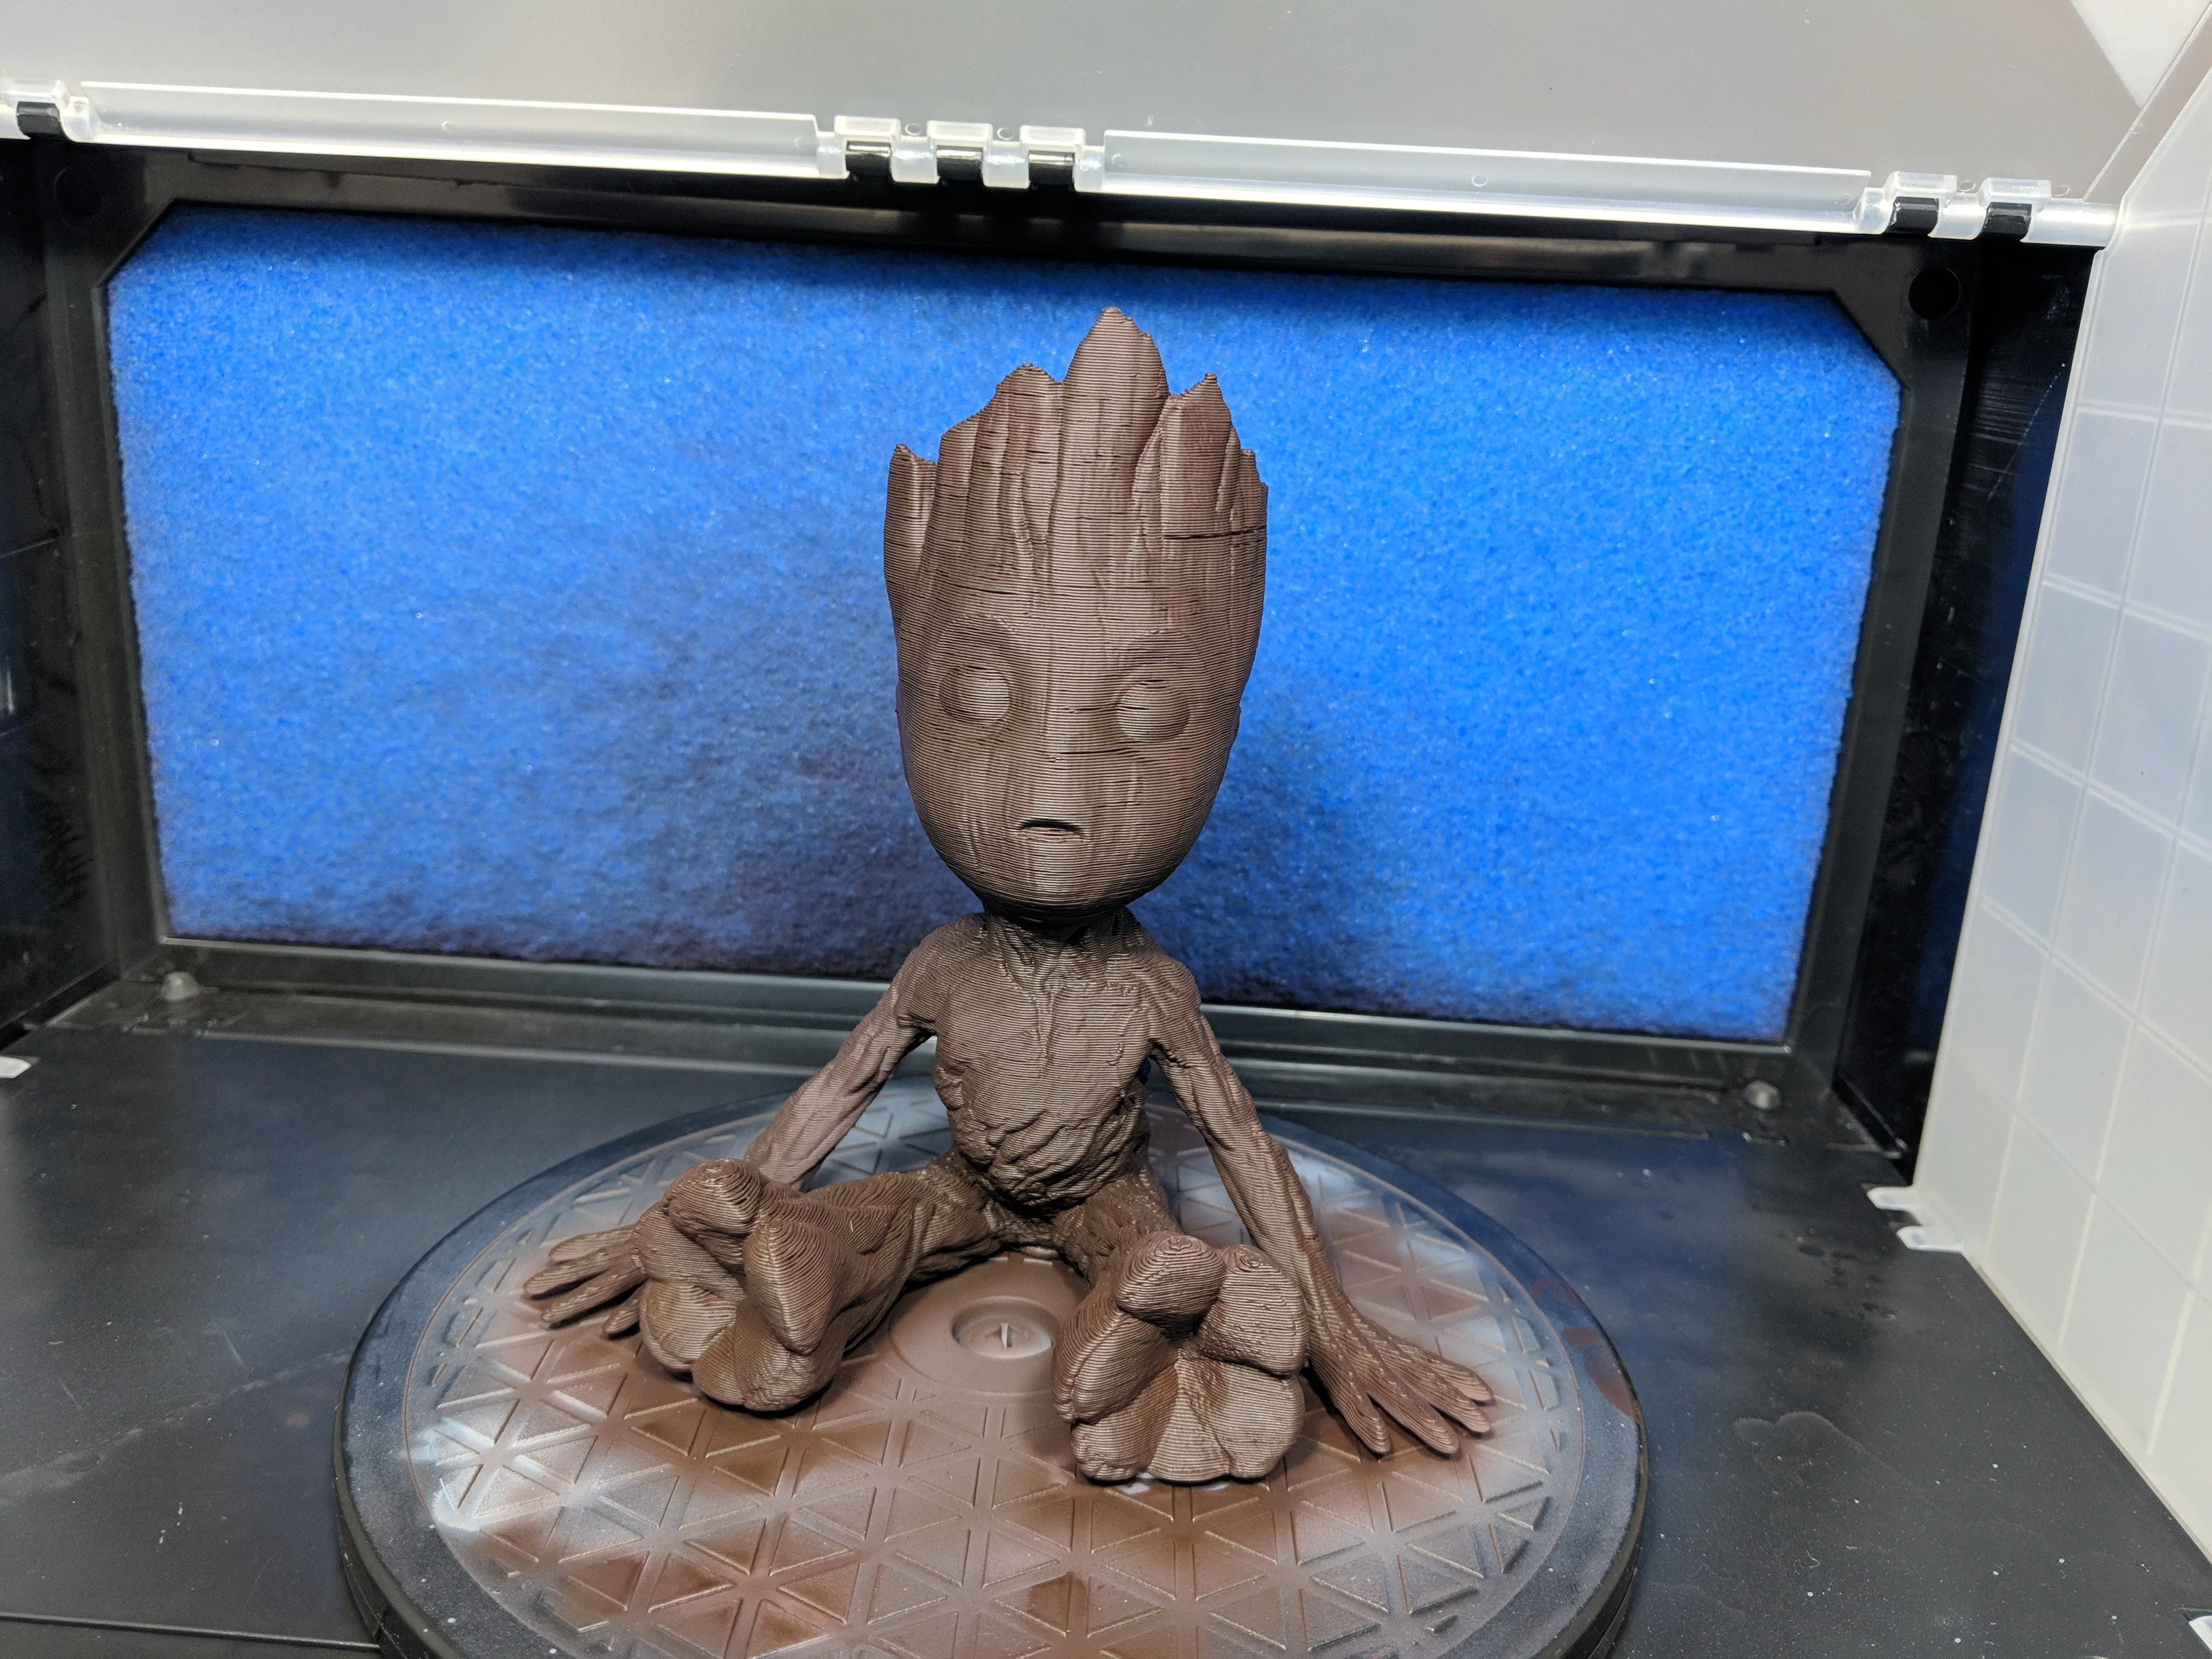 3D Printed Groot model